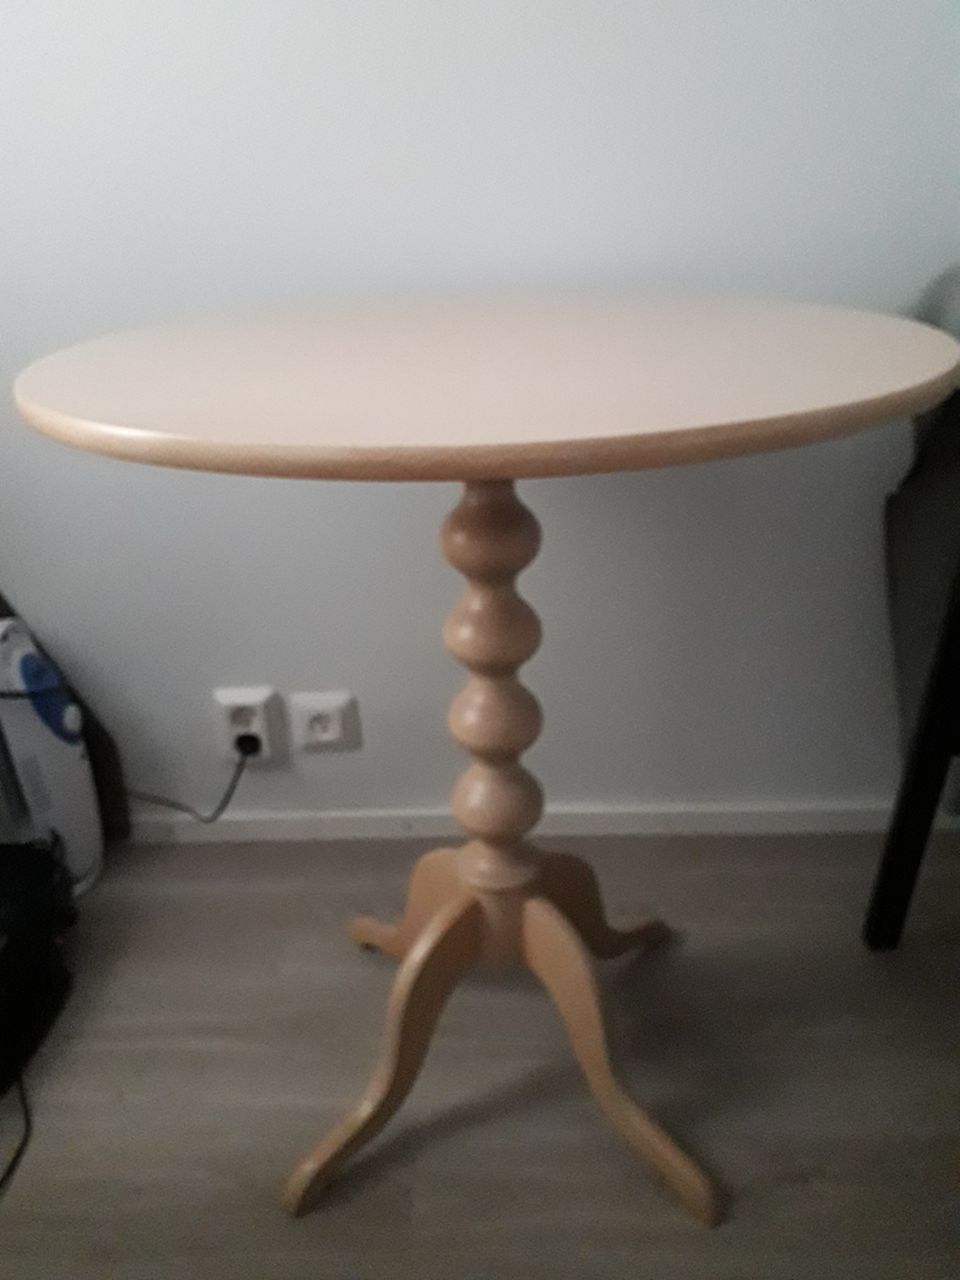 Pieni pyöreä pöytä